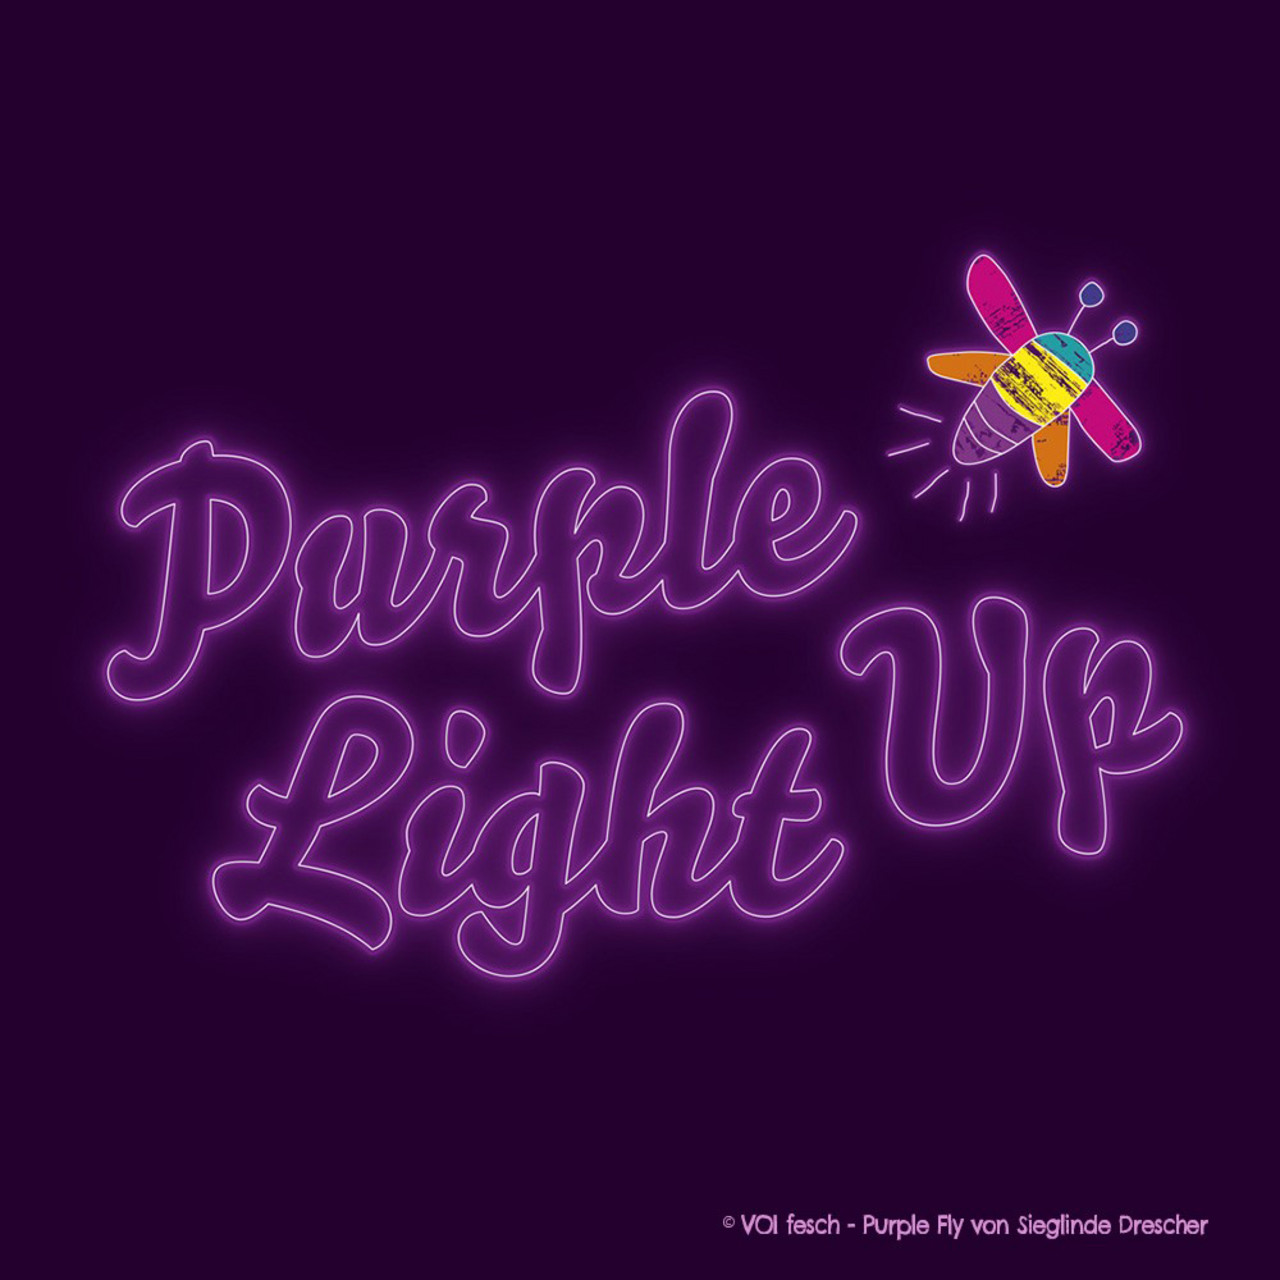 Dunkler Hintergrund, leuchtende lila Schrift "PurpleLightUp" und eine buntes Glühwürmchen - die "PurpleFly"